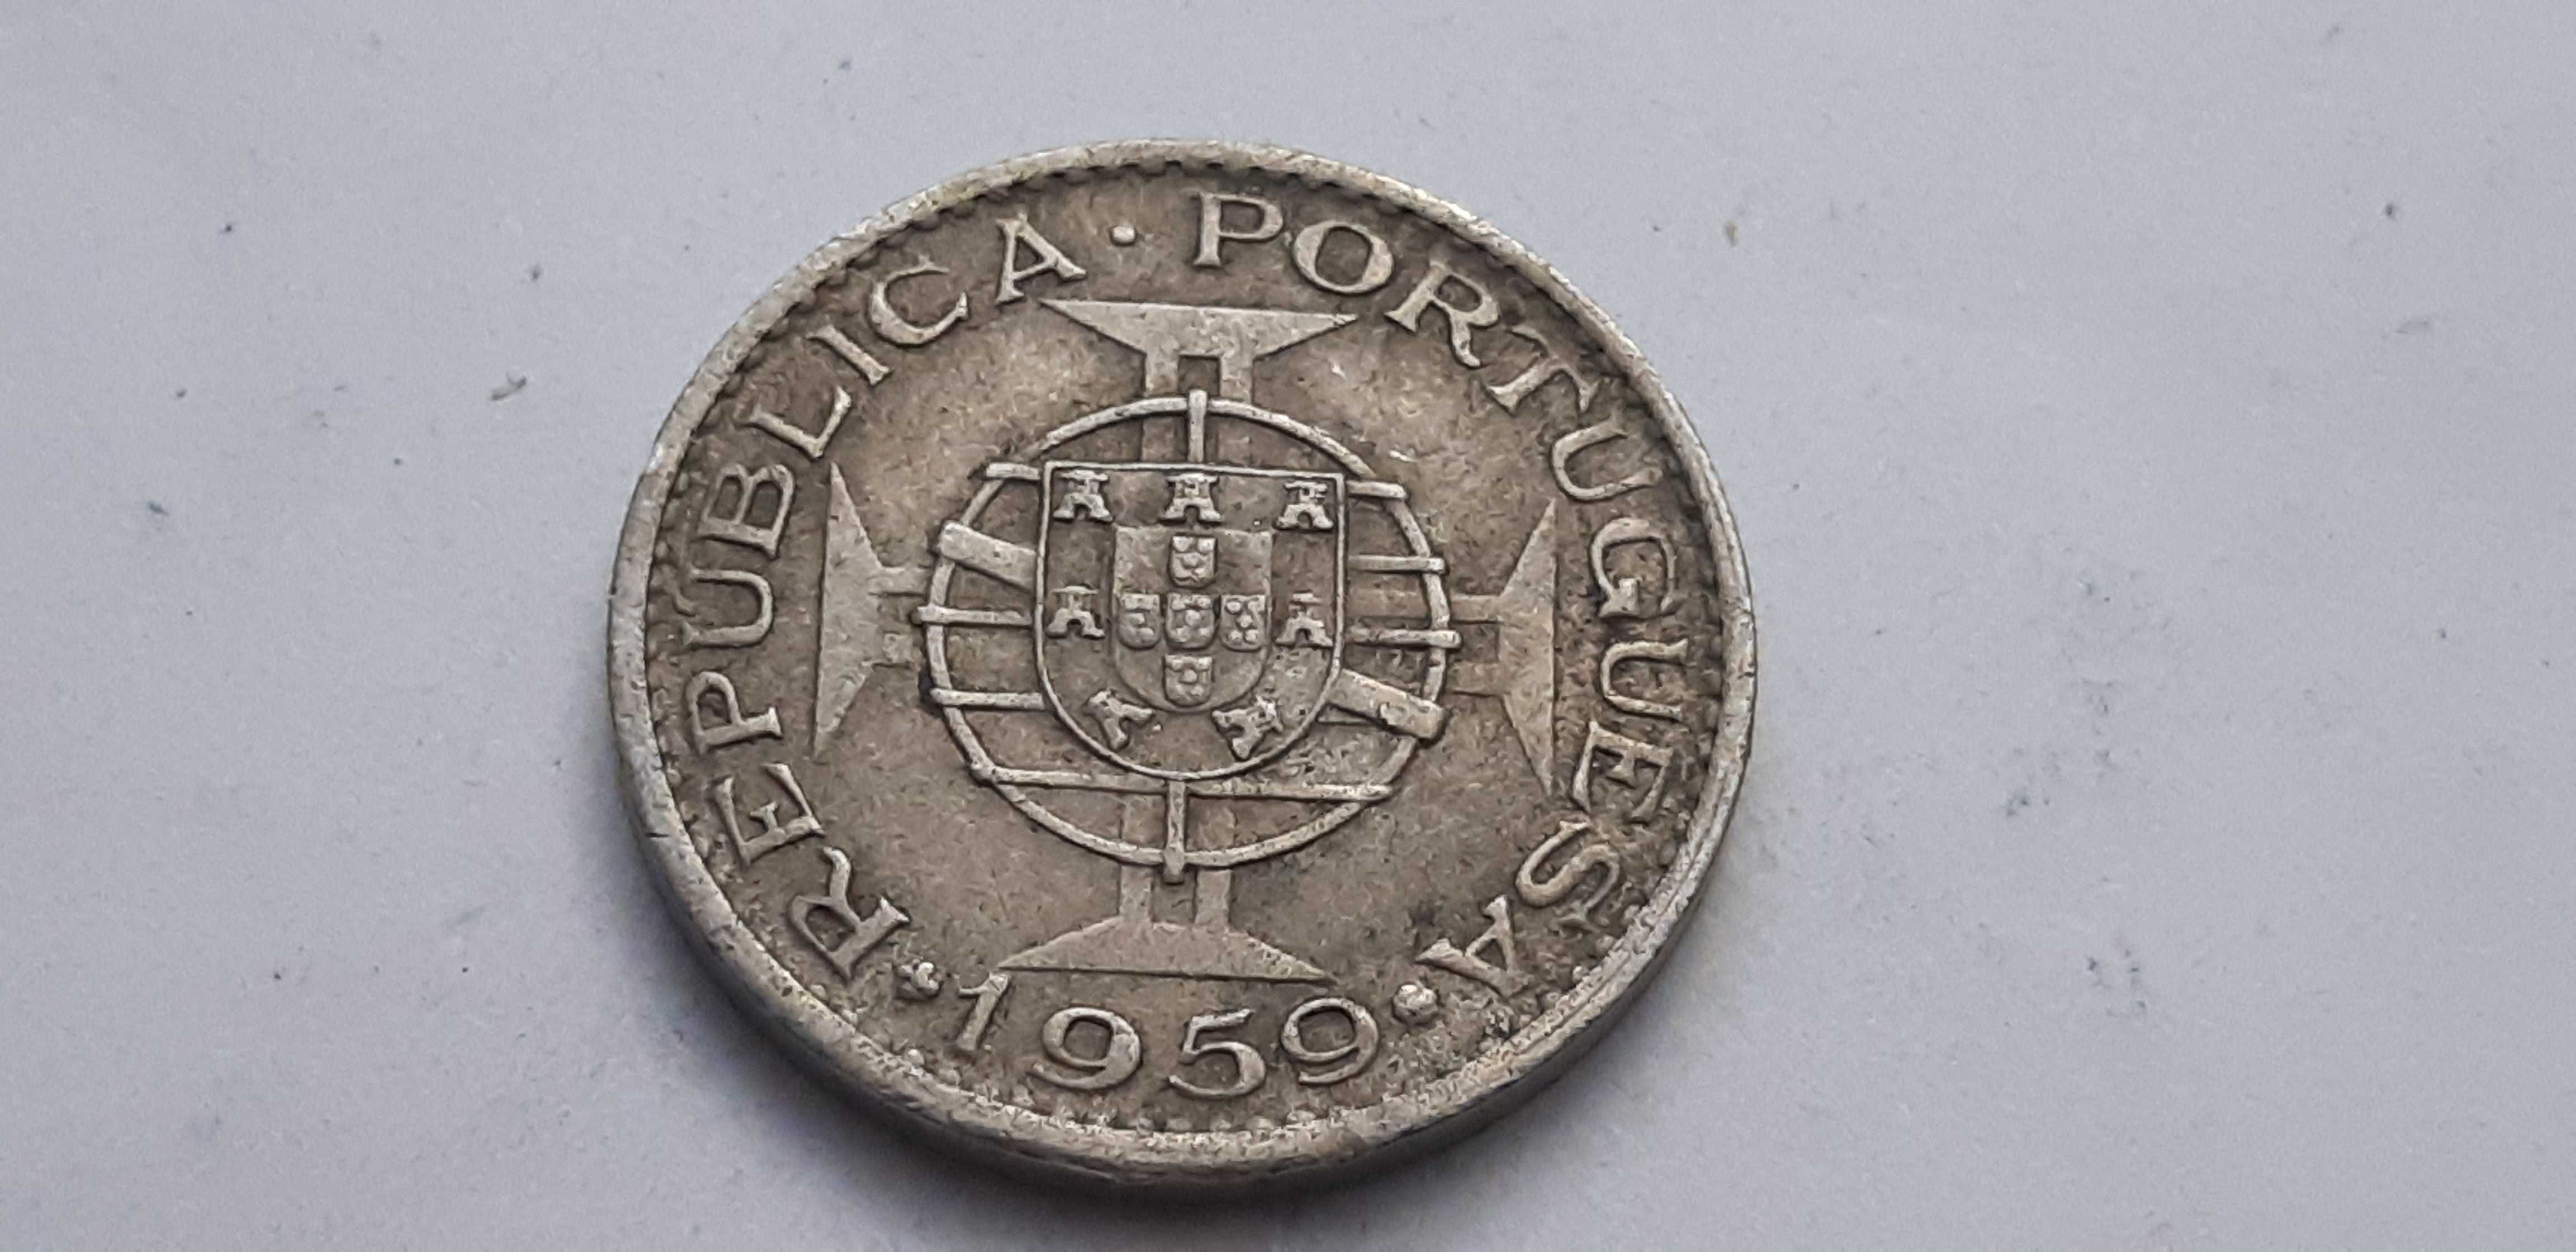 Indie Portugalskie - 60 centavo - 1959